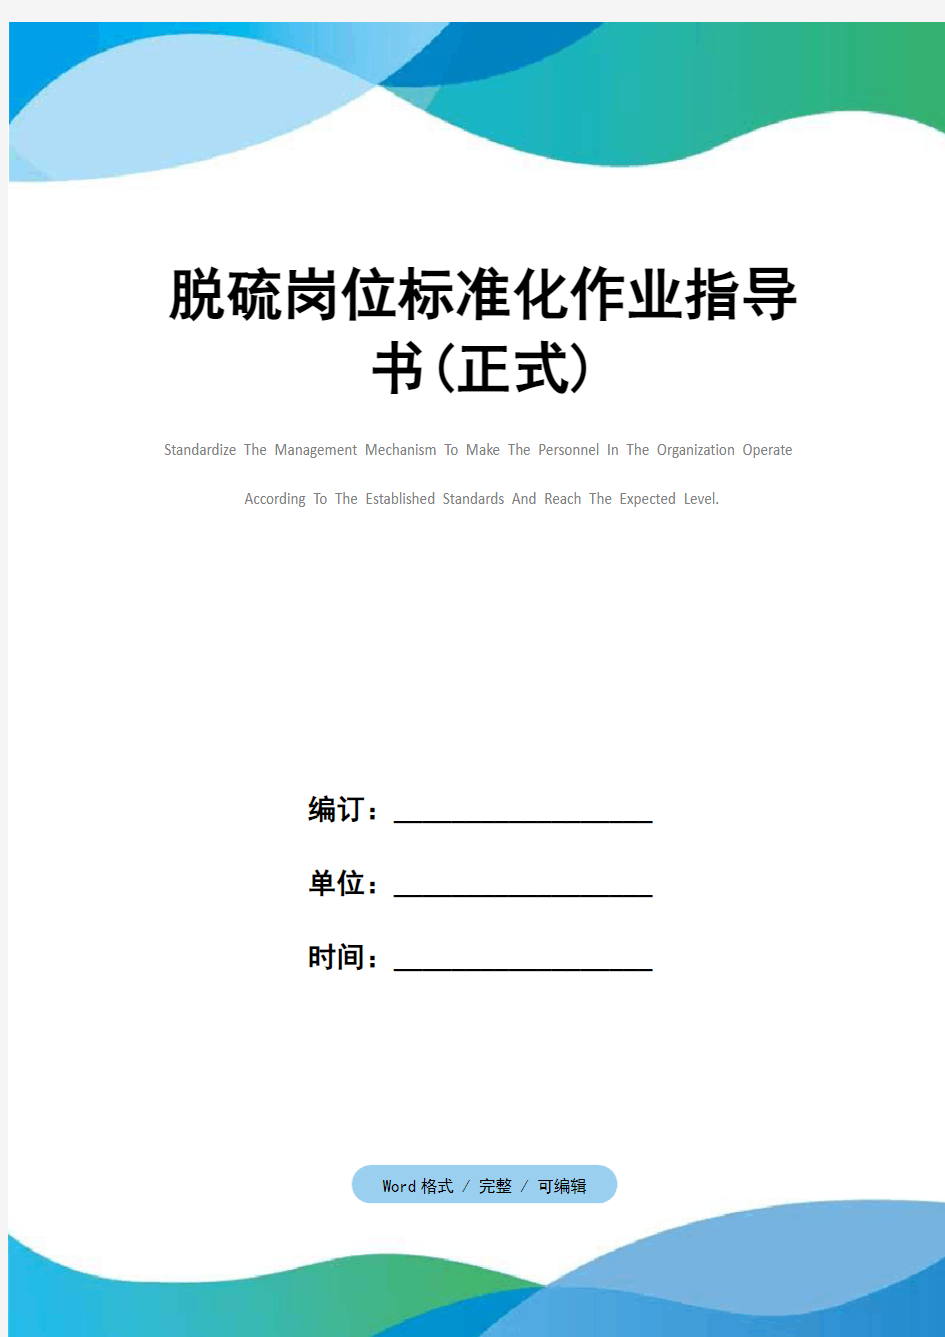 脱硫岗位标准化作业指导书(正式)